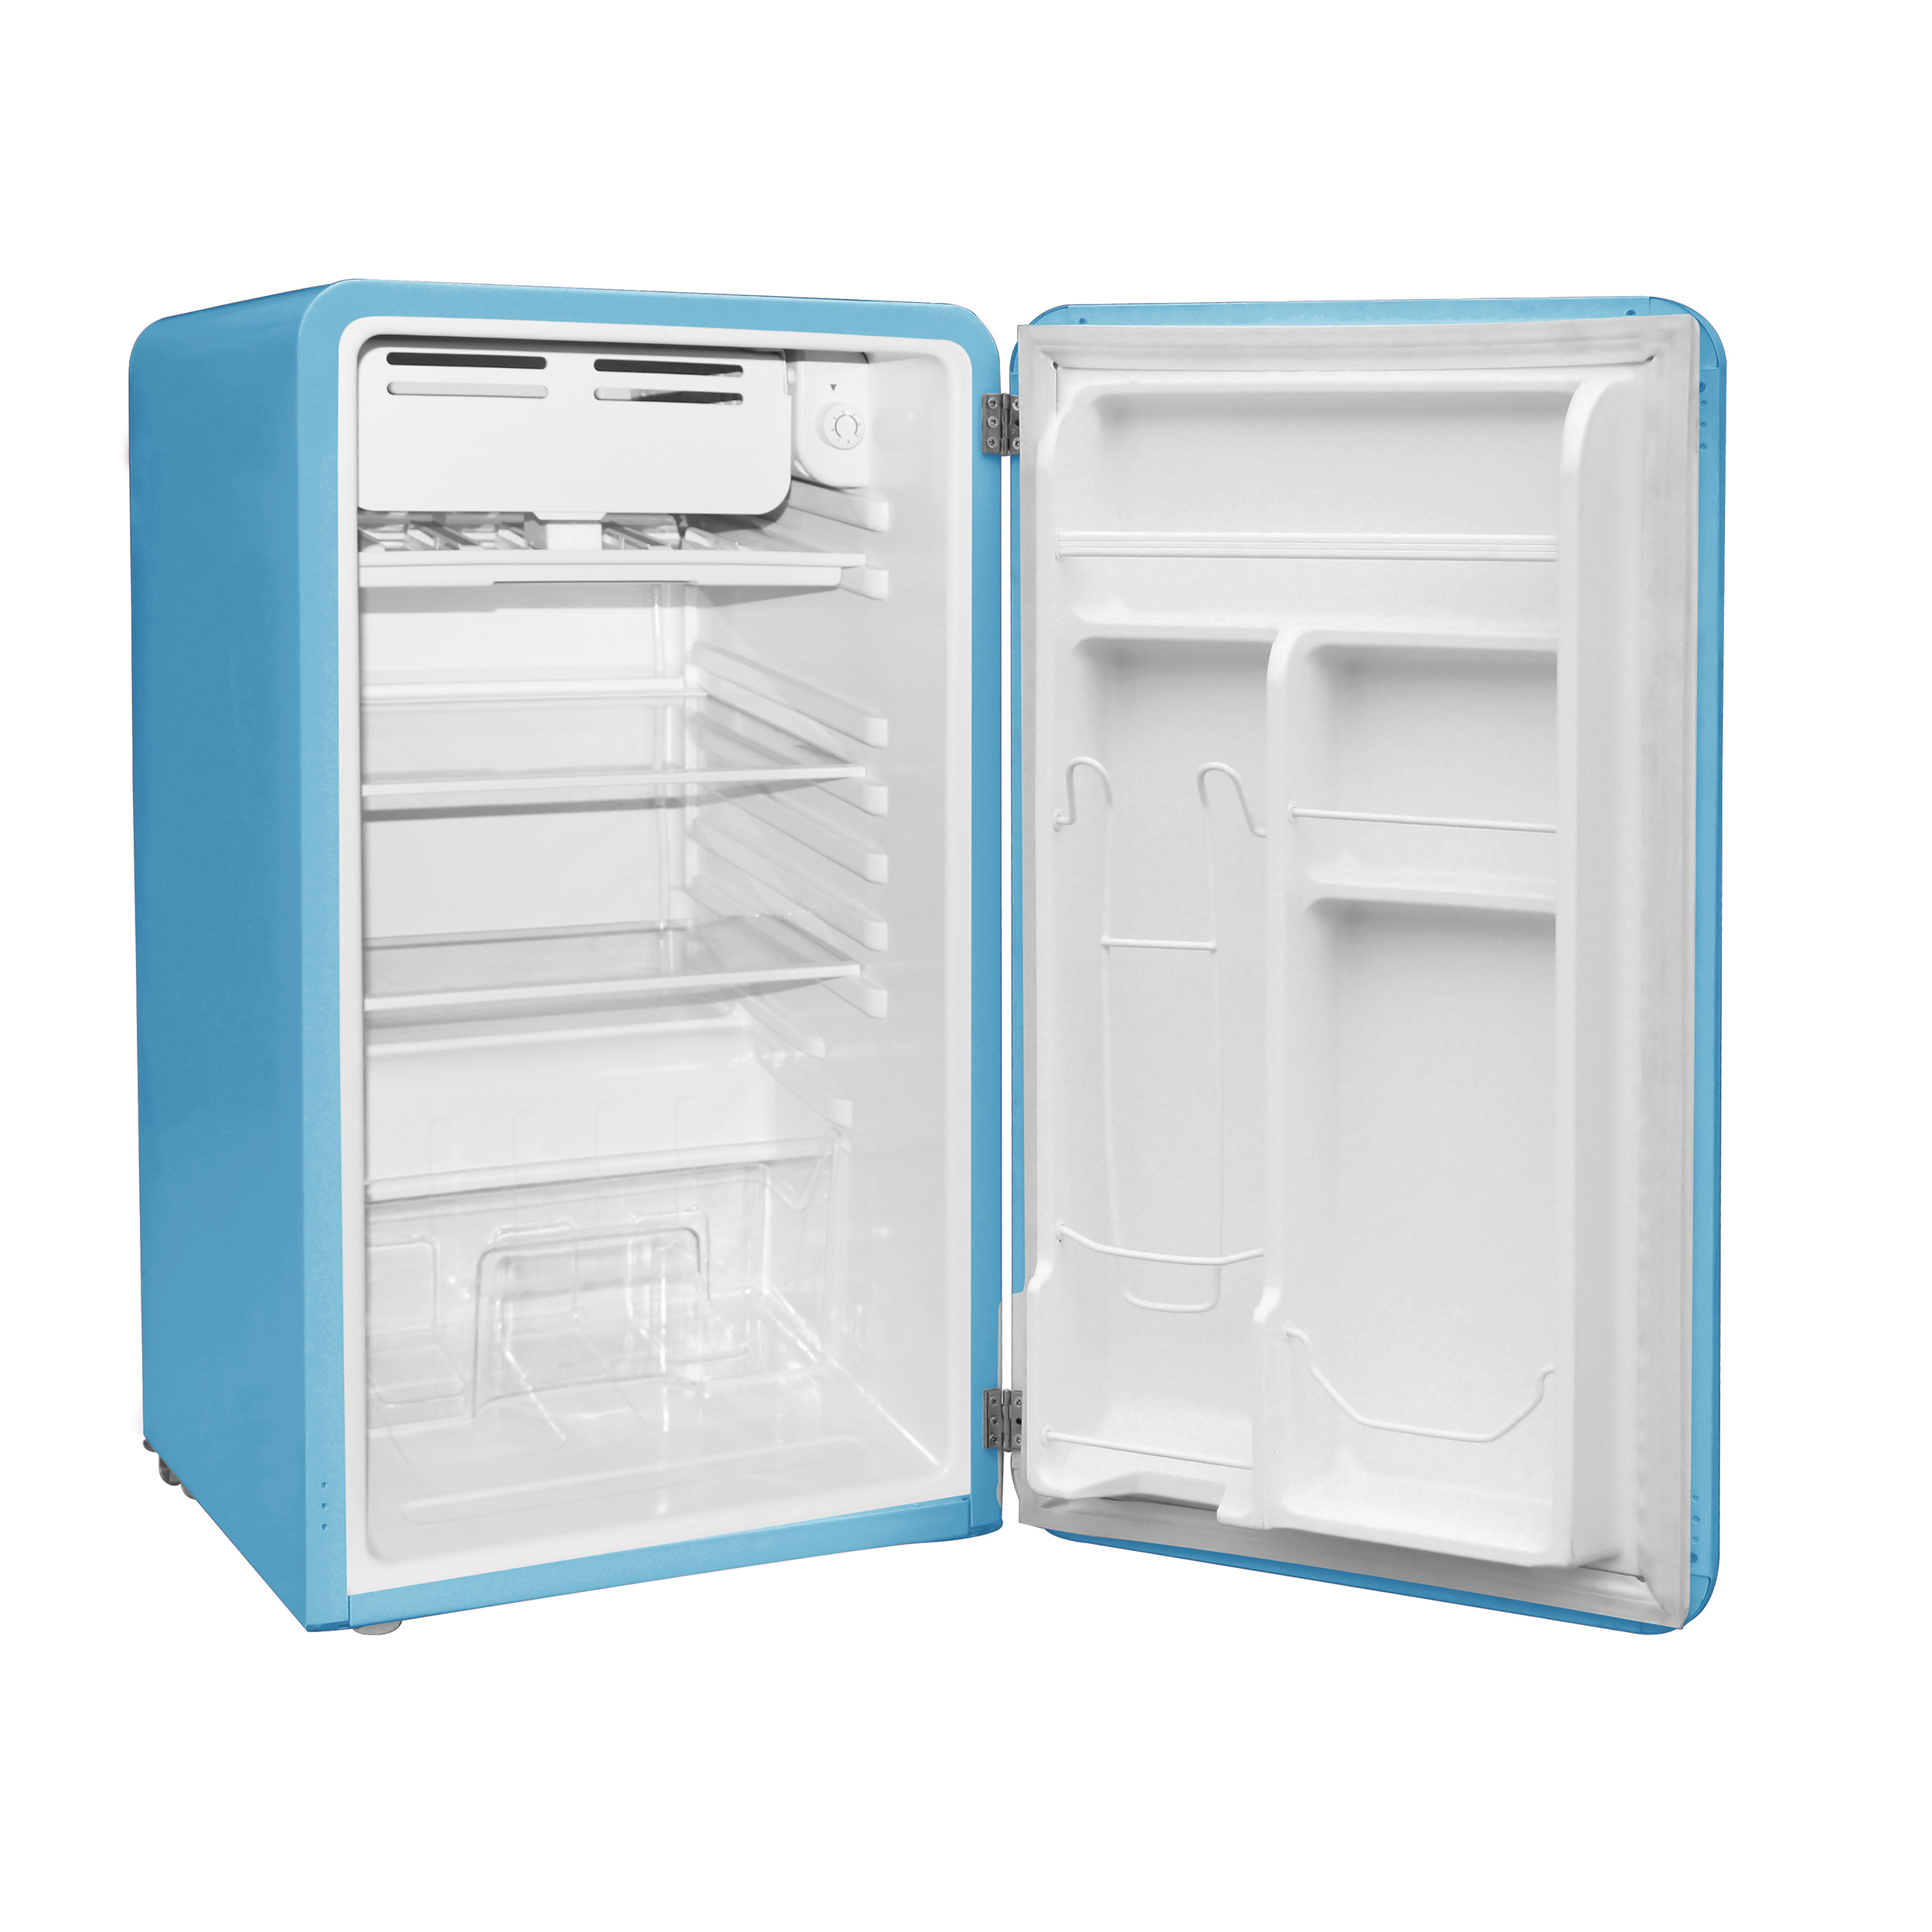 Buy Frigidaire 3 2 Cu Ft Single Door Retro Compact Refrigerator Efr372 Blue Online In Taiwan 243273419